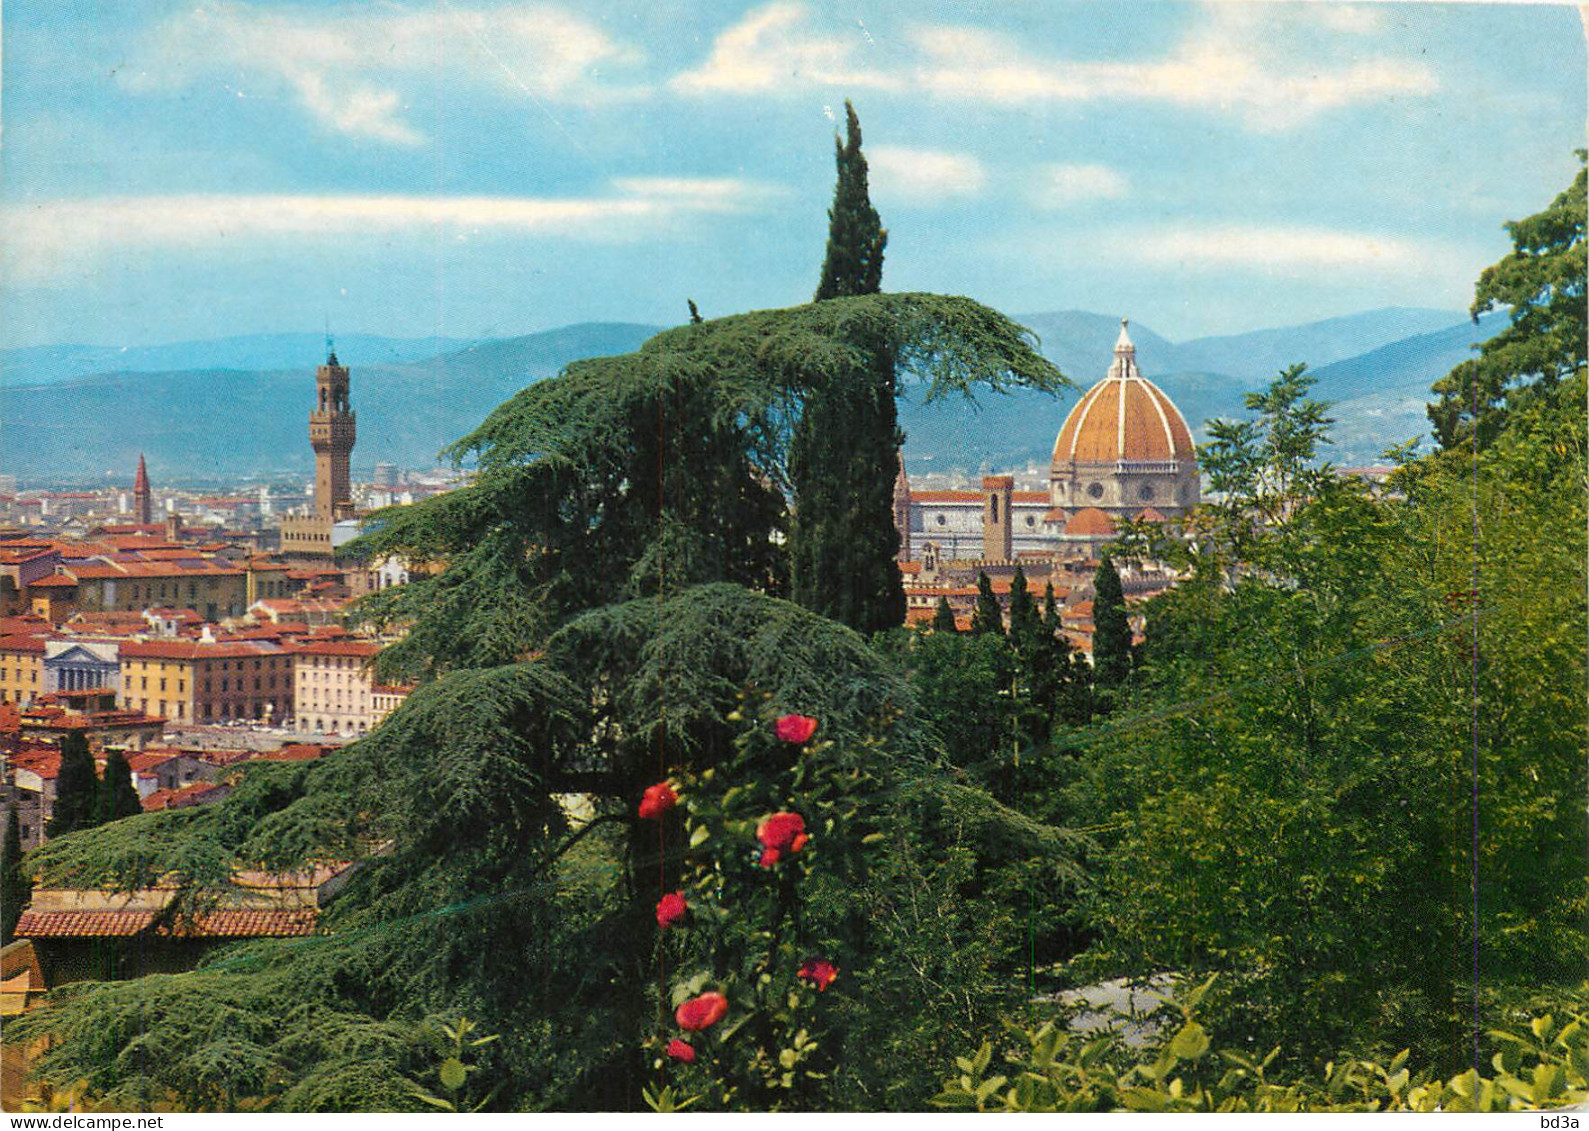 FIRENZE ITALIA - Firenze